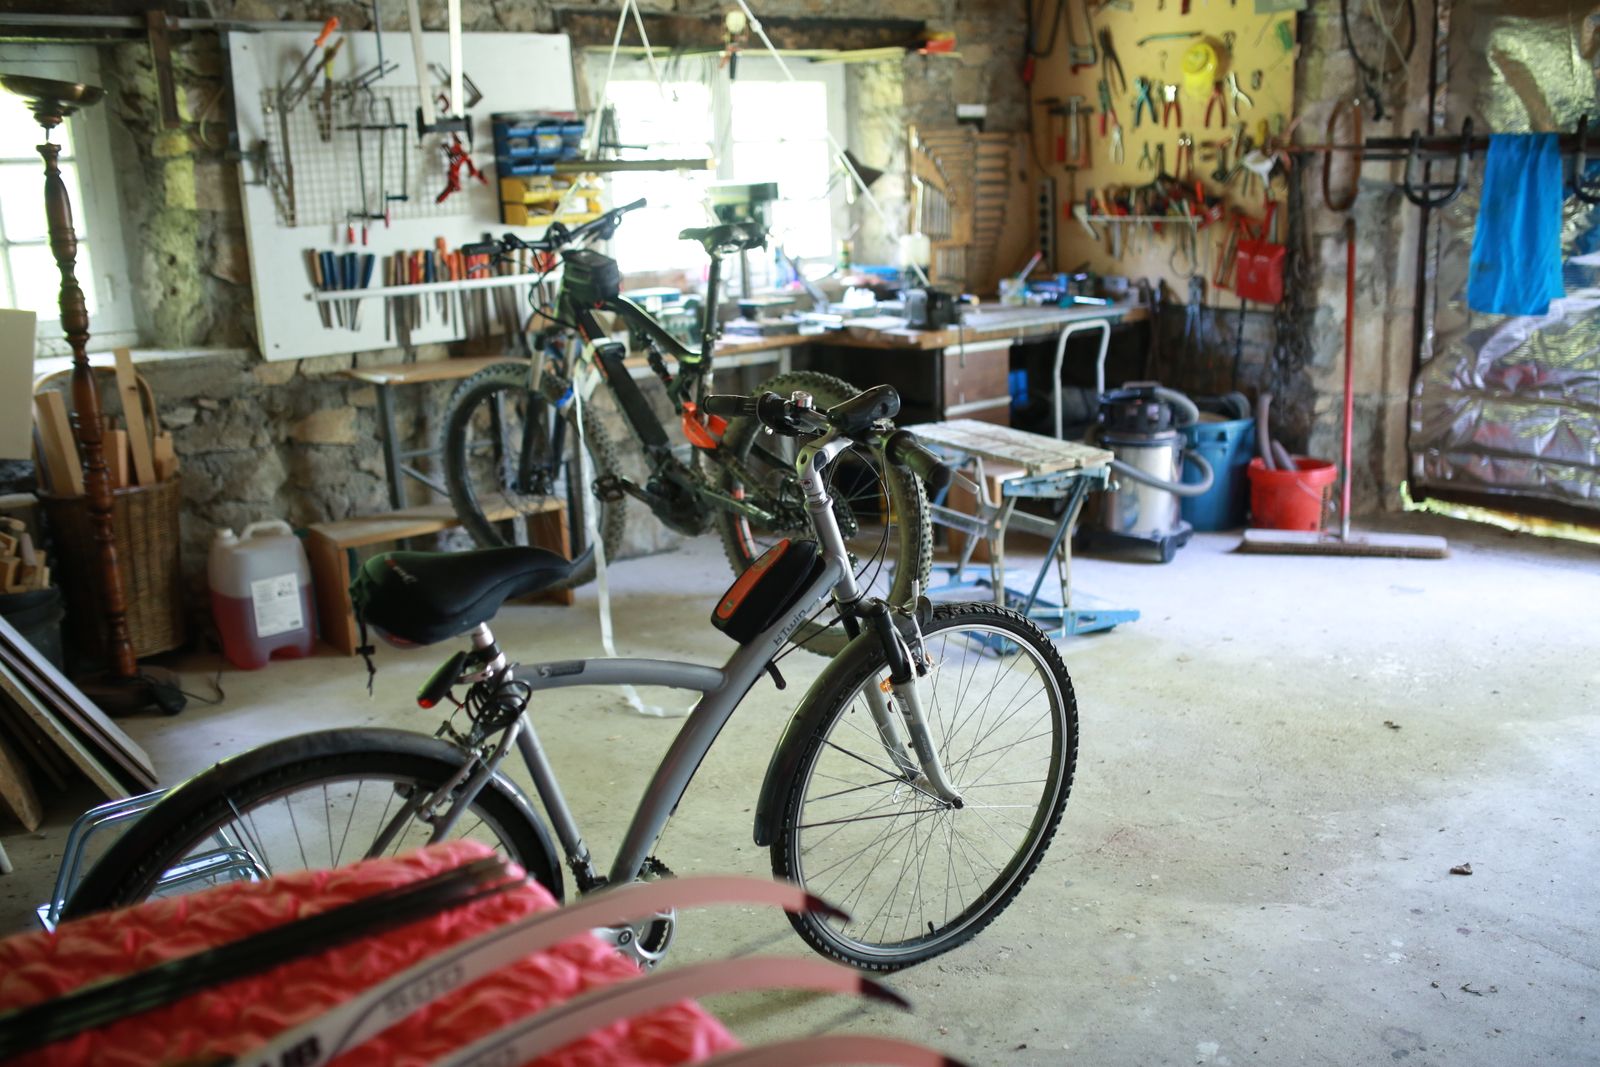 Atelier de réparation vélos, garage à vélos, motos, rangement du matériel sports nature